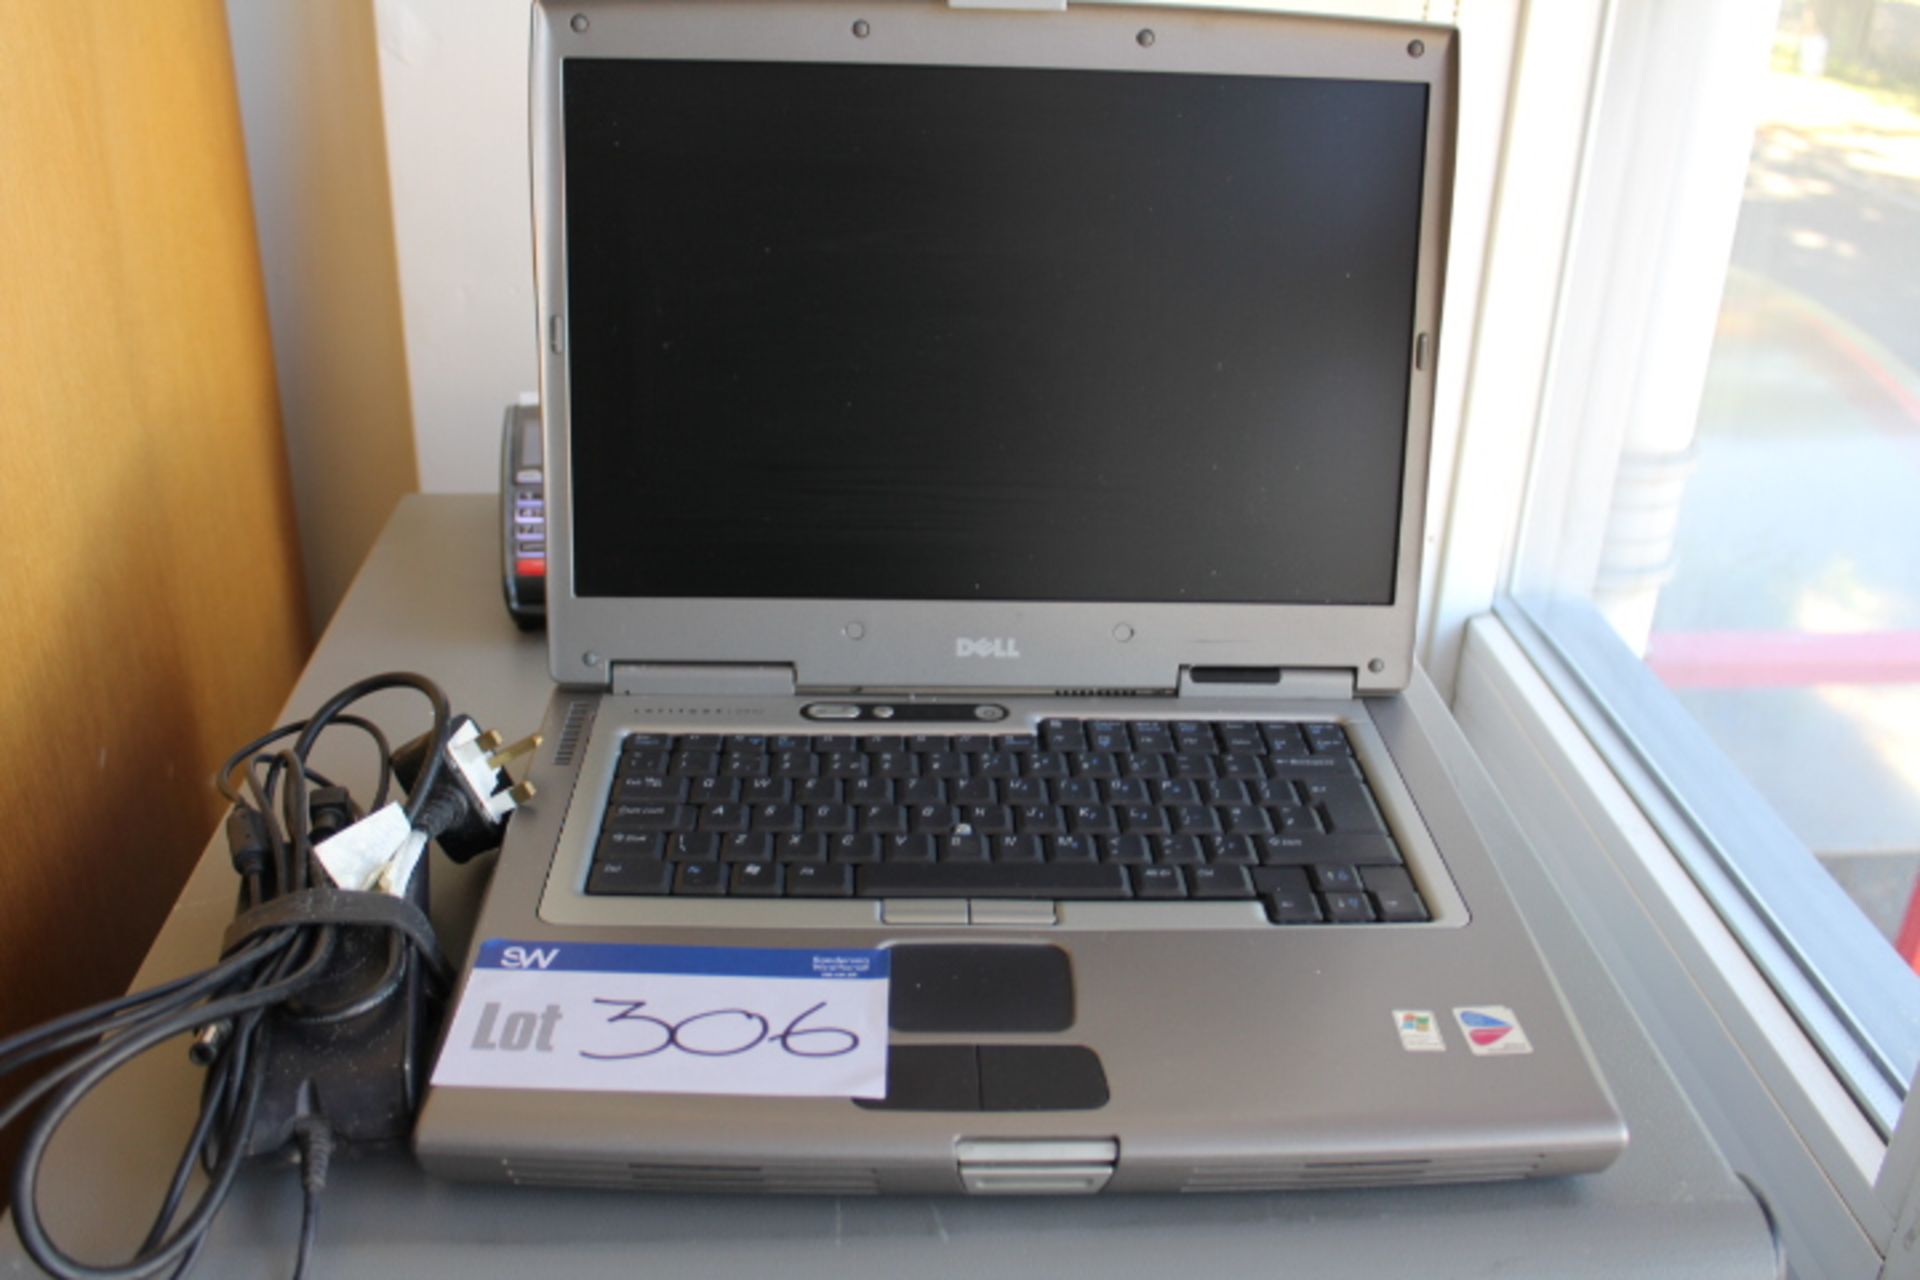 Dell Latitude D800 Intel Centrino Laptop Computer